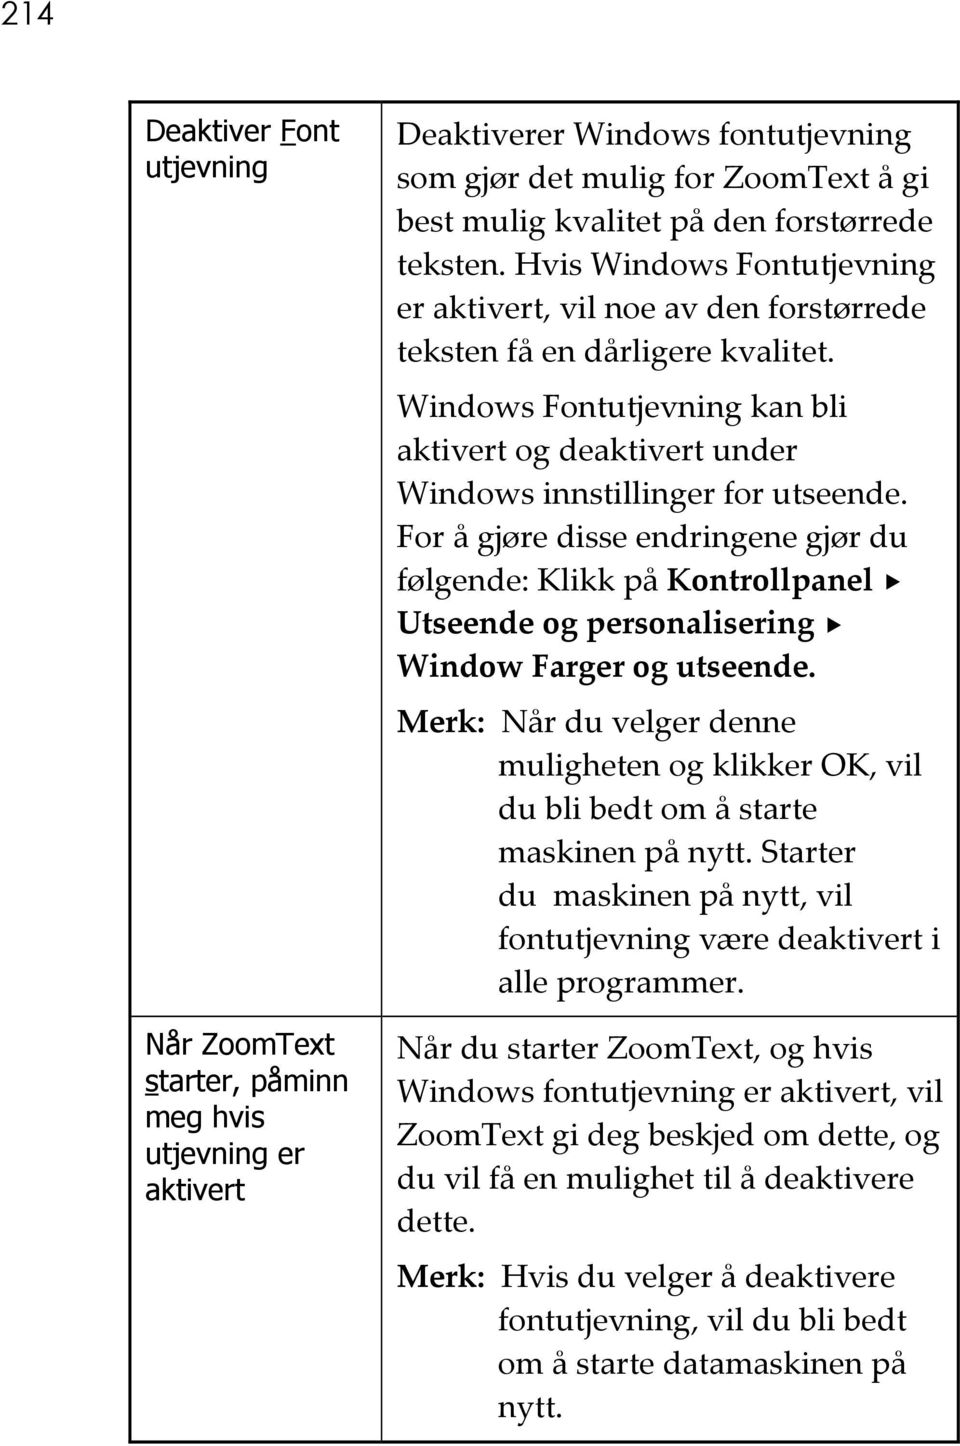 Windows Fontutjevning kan bli aktivert og deaktivert under Windows innstillinger for utseende.